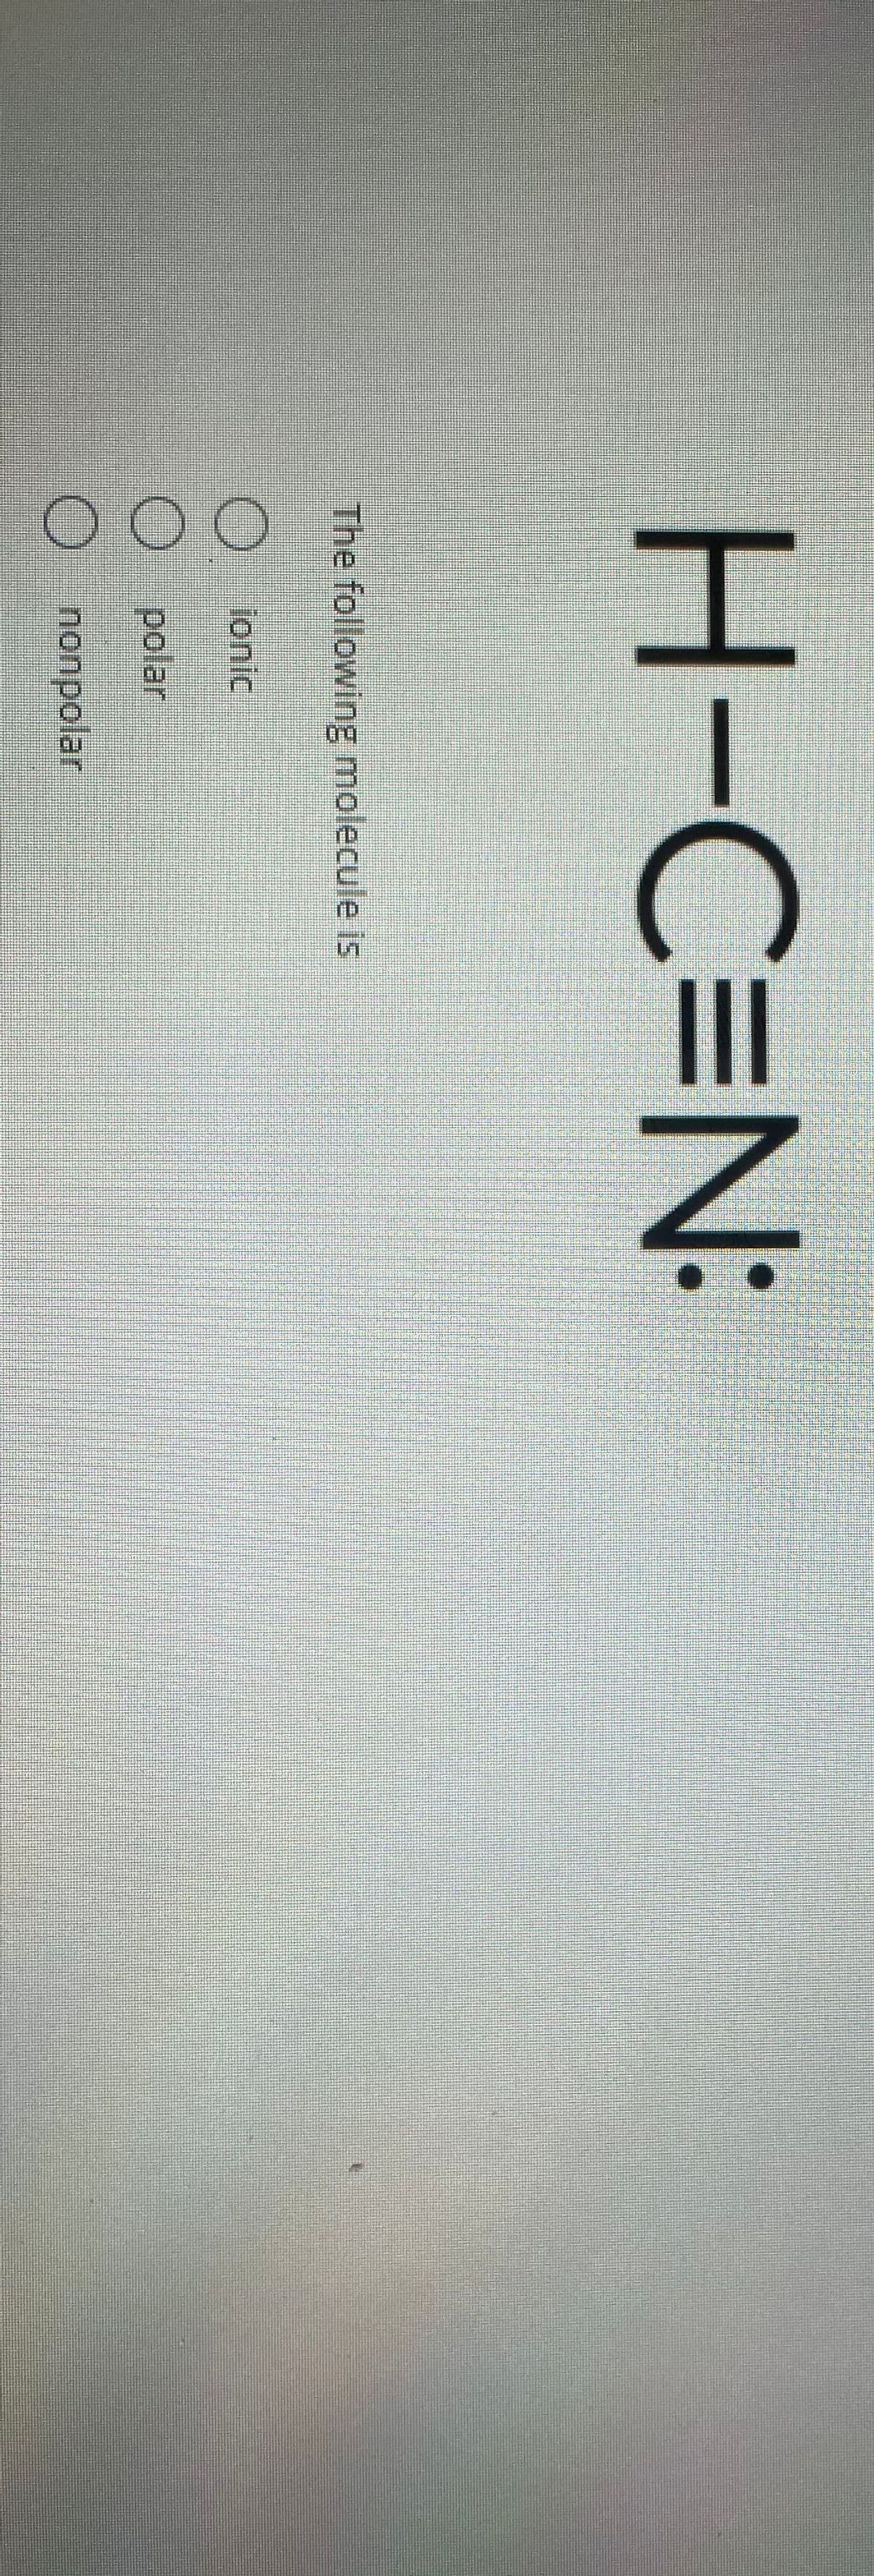 00O
H-C3N:
The following molecule is
lonic
O polar
nonpolar
